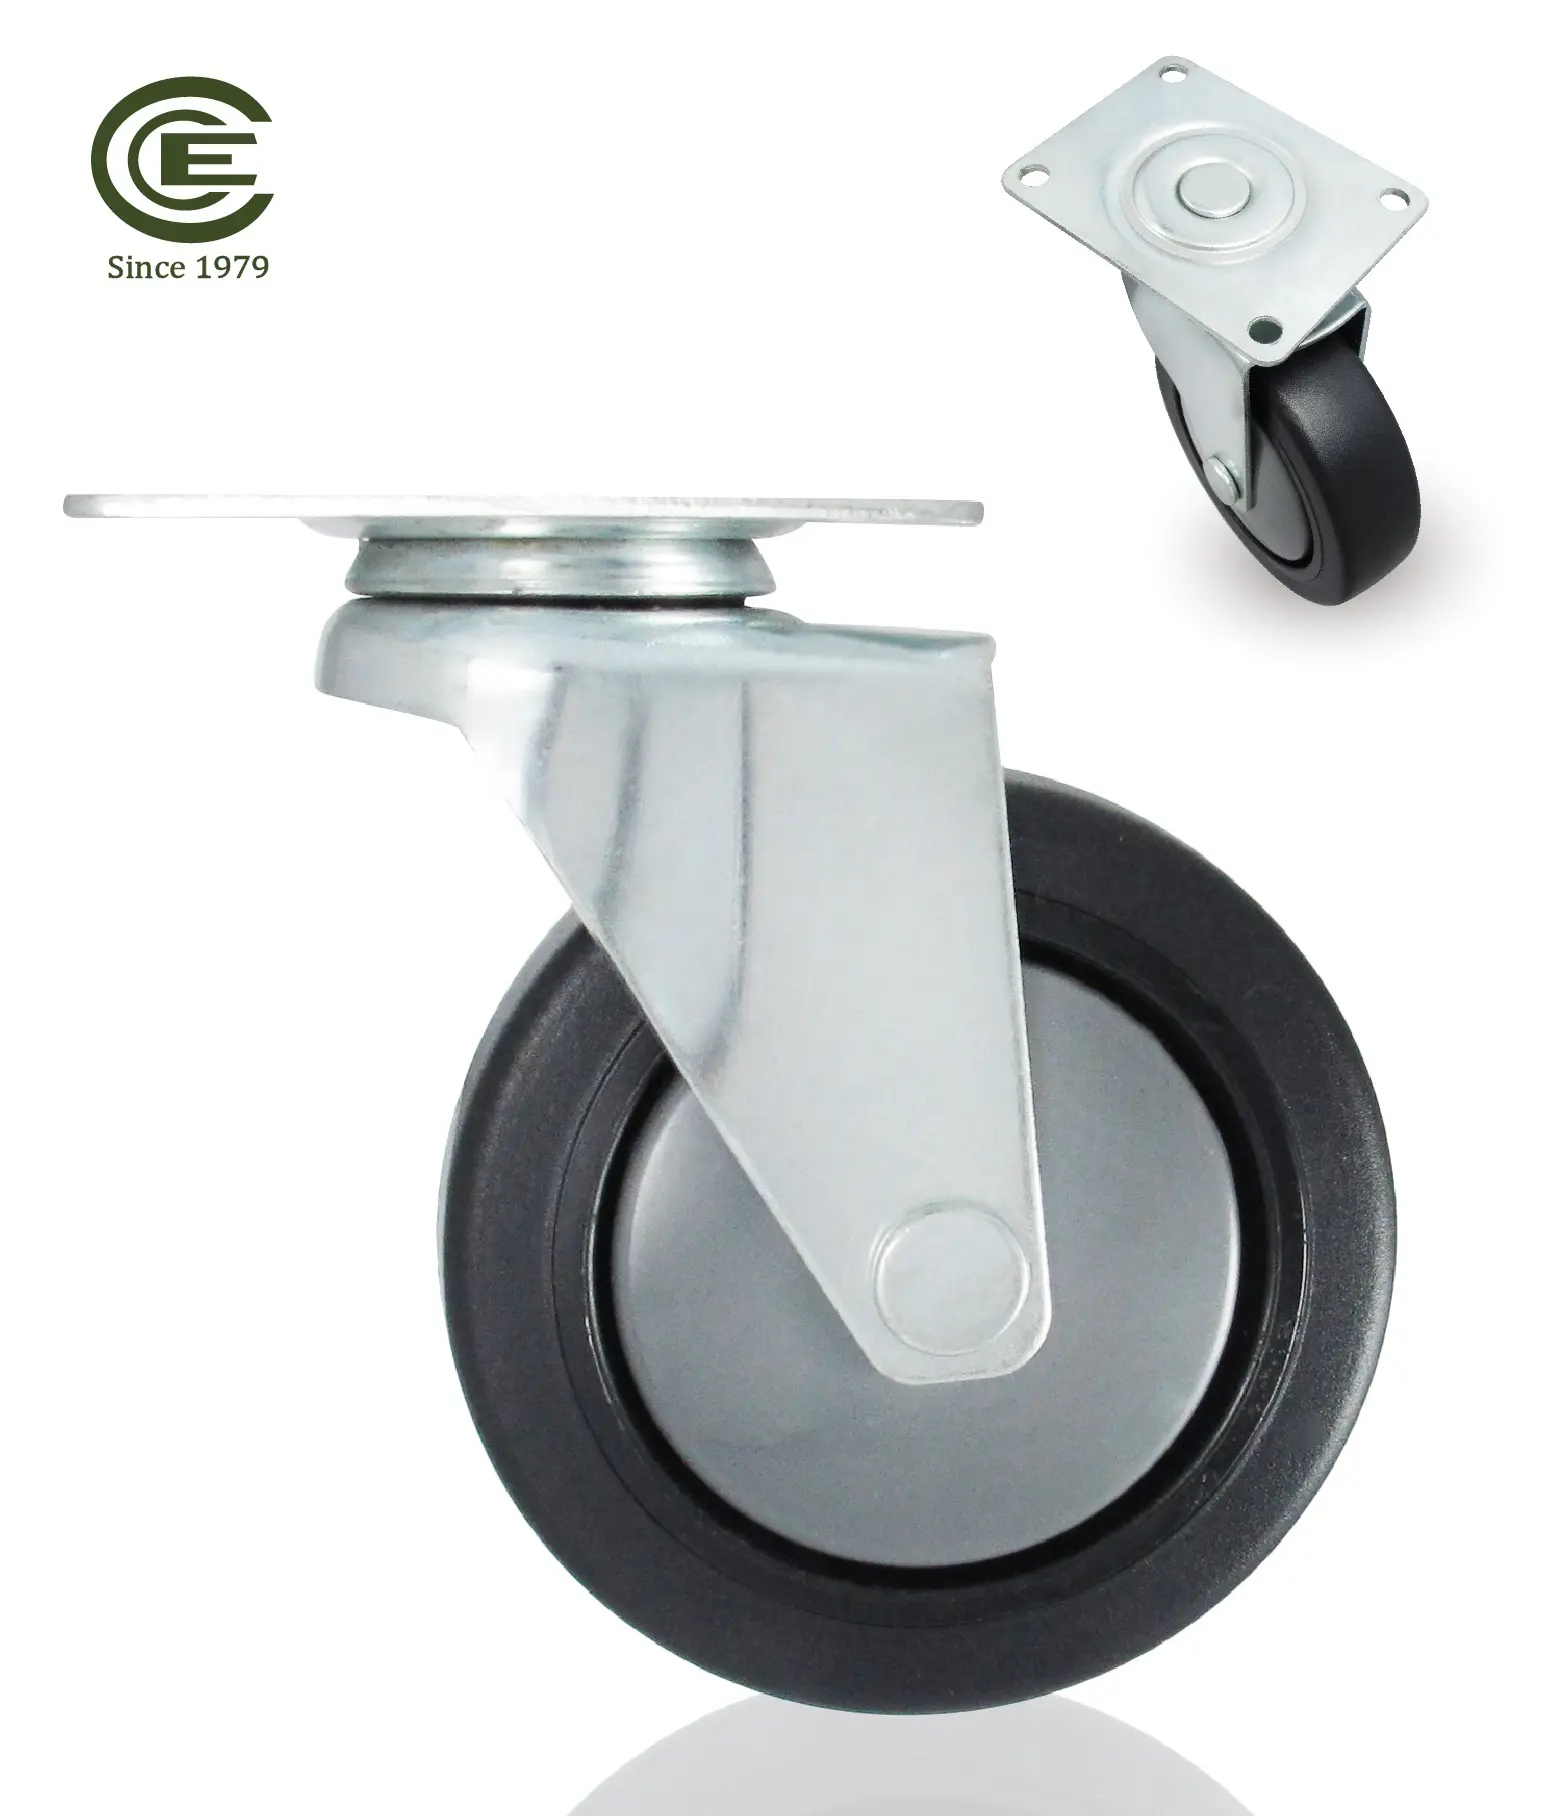 Ролик CCE 75 мм, поворотный, полипропиленовый сердечник, TPR колеса для кухонной мебели